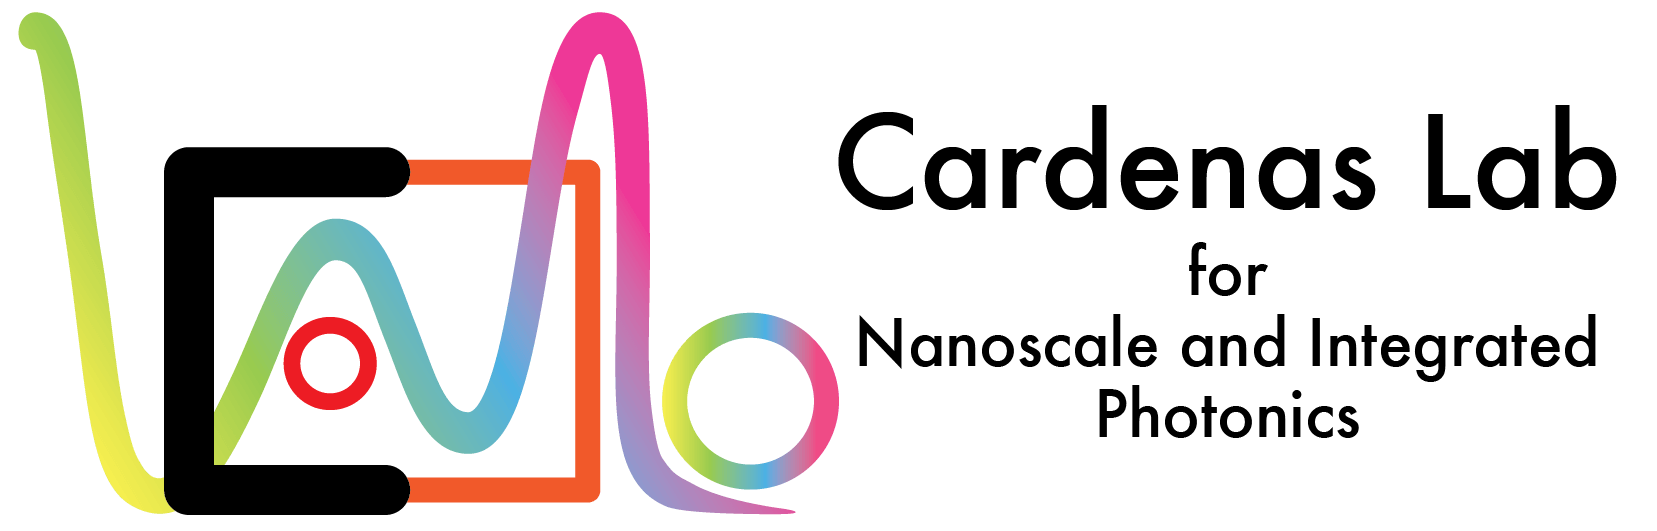 Cardenas Logo - Cardenas Lab